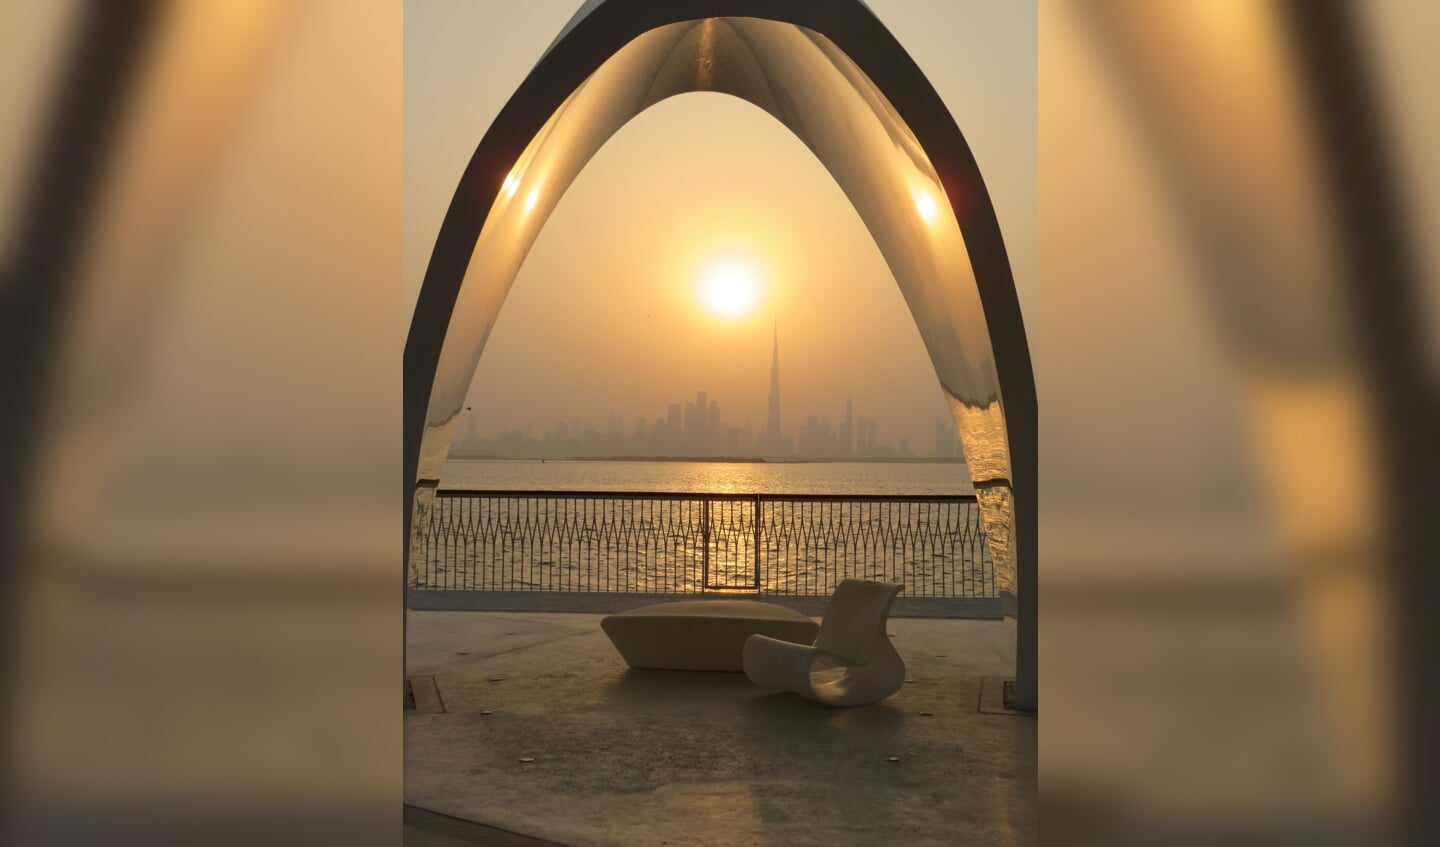 De skyline van Dubai bij zonsondergang.